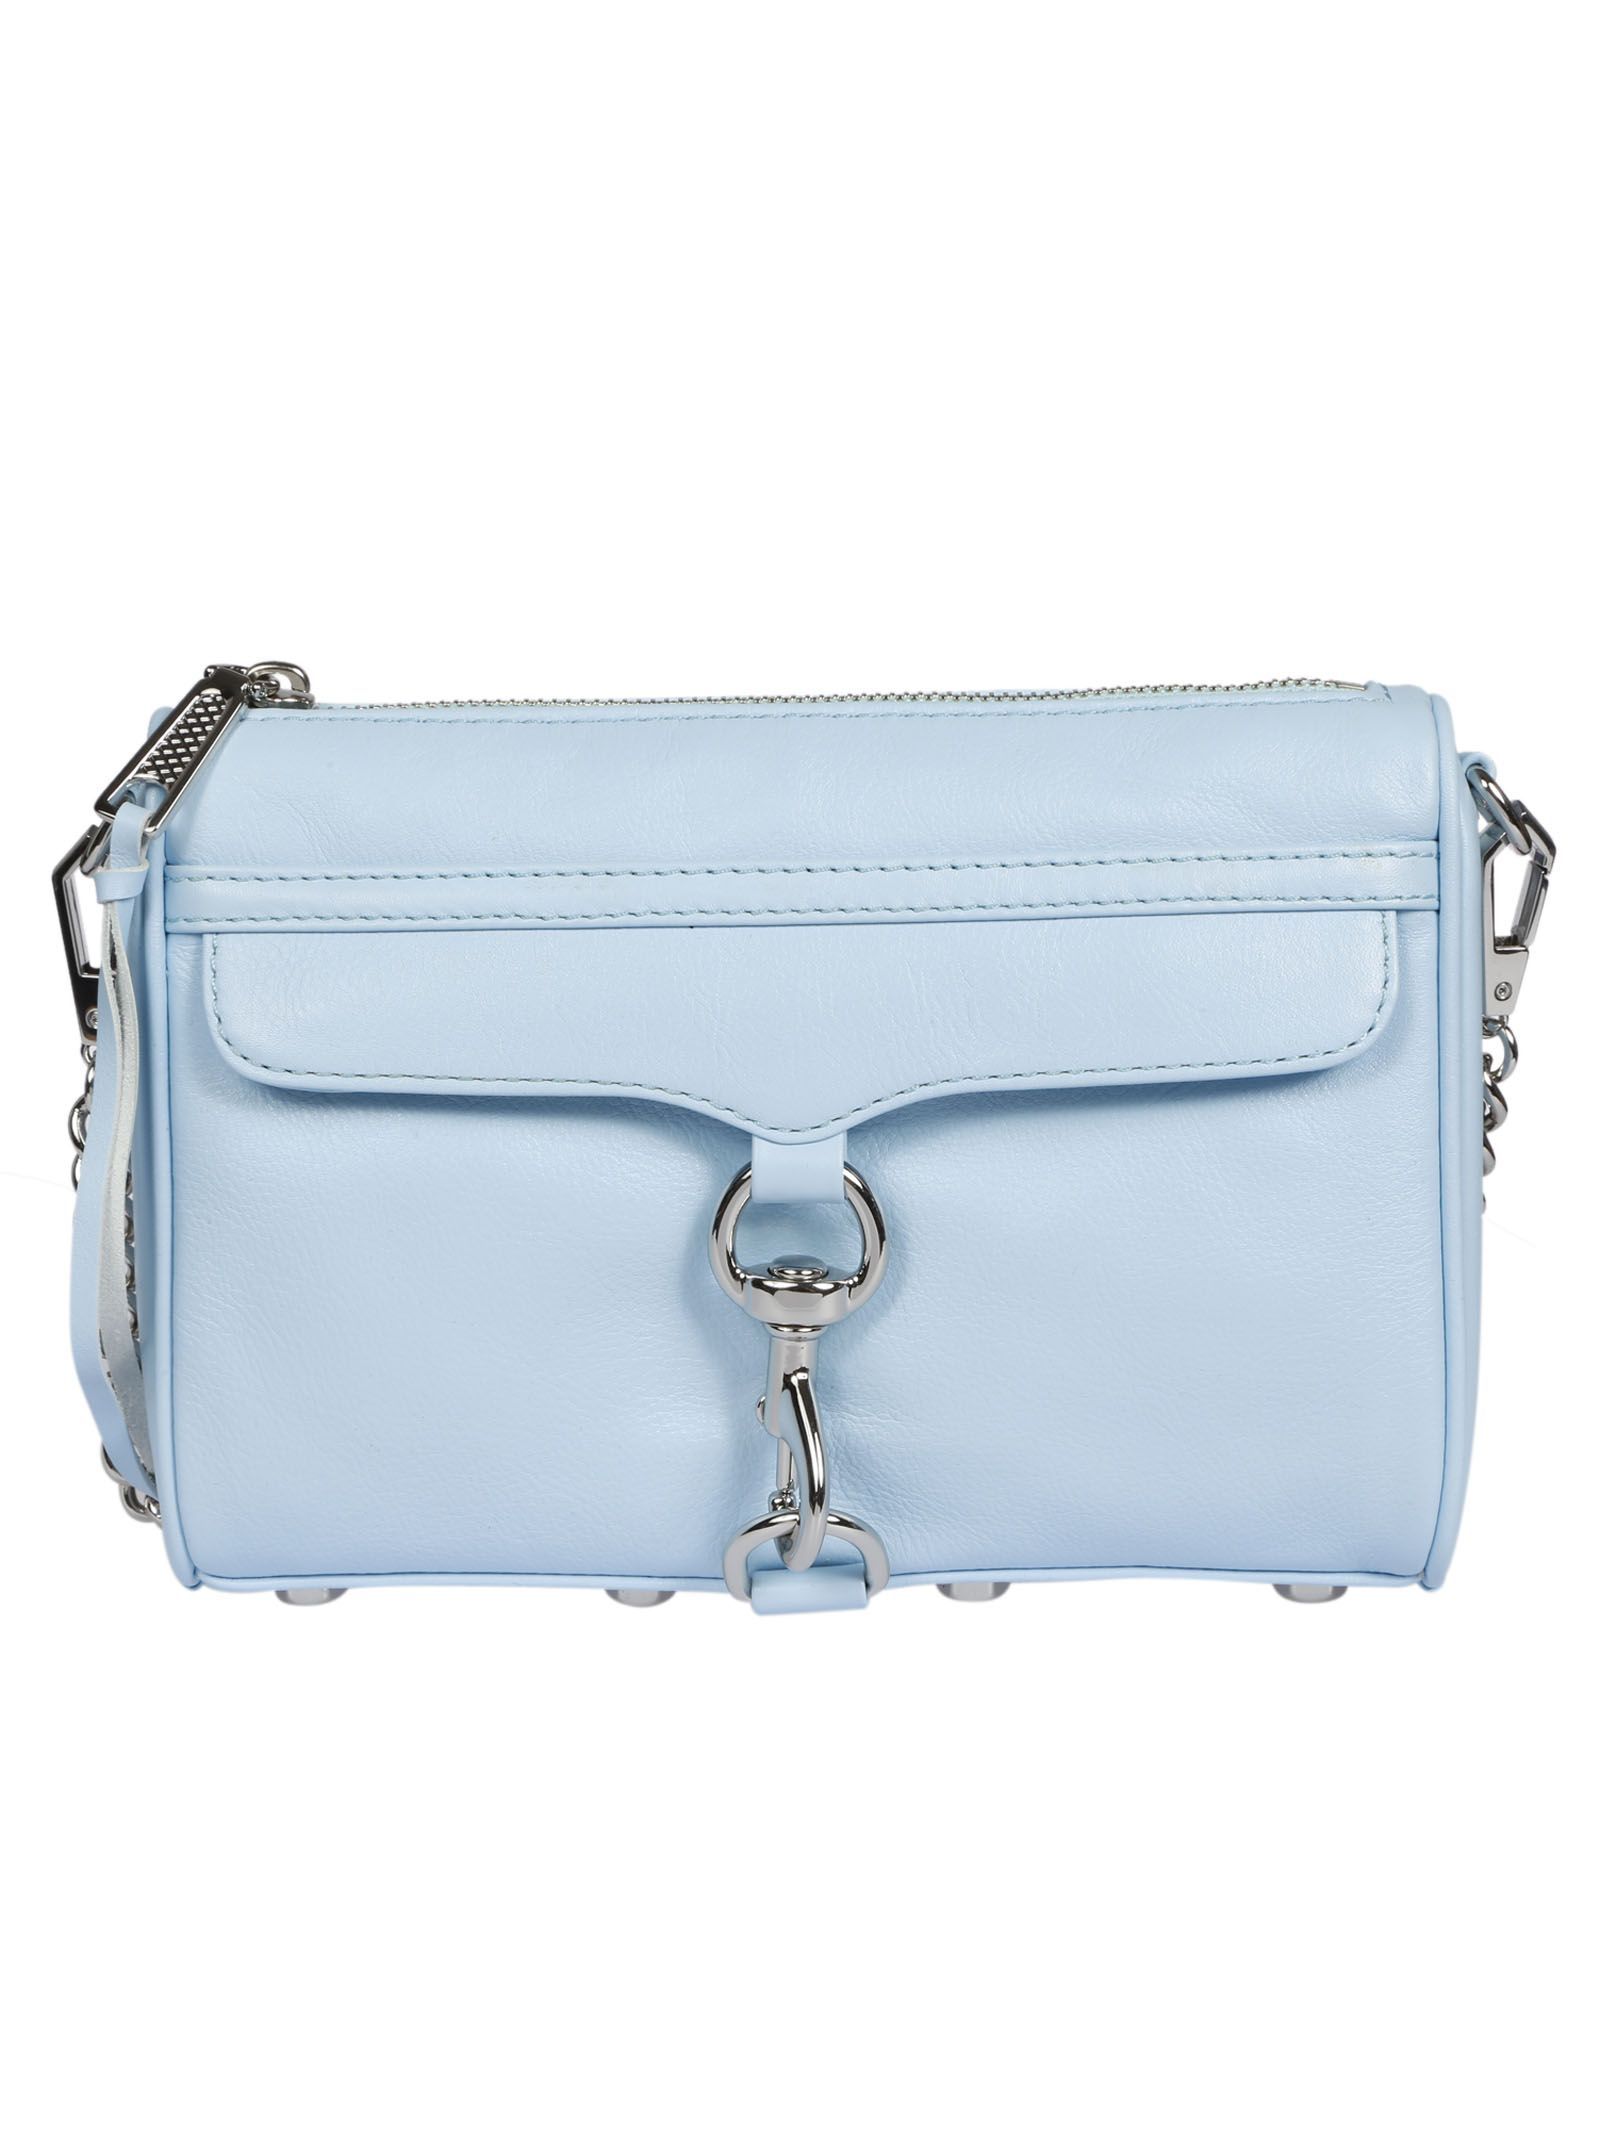 Rebecca Minkoff Mini Mac Shoulder Bag | Italist.com US